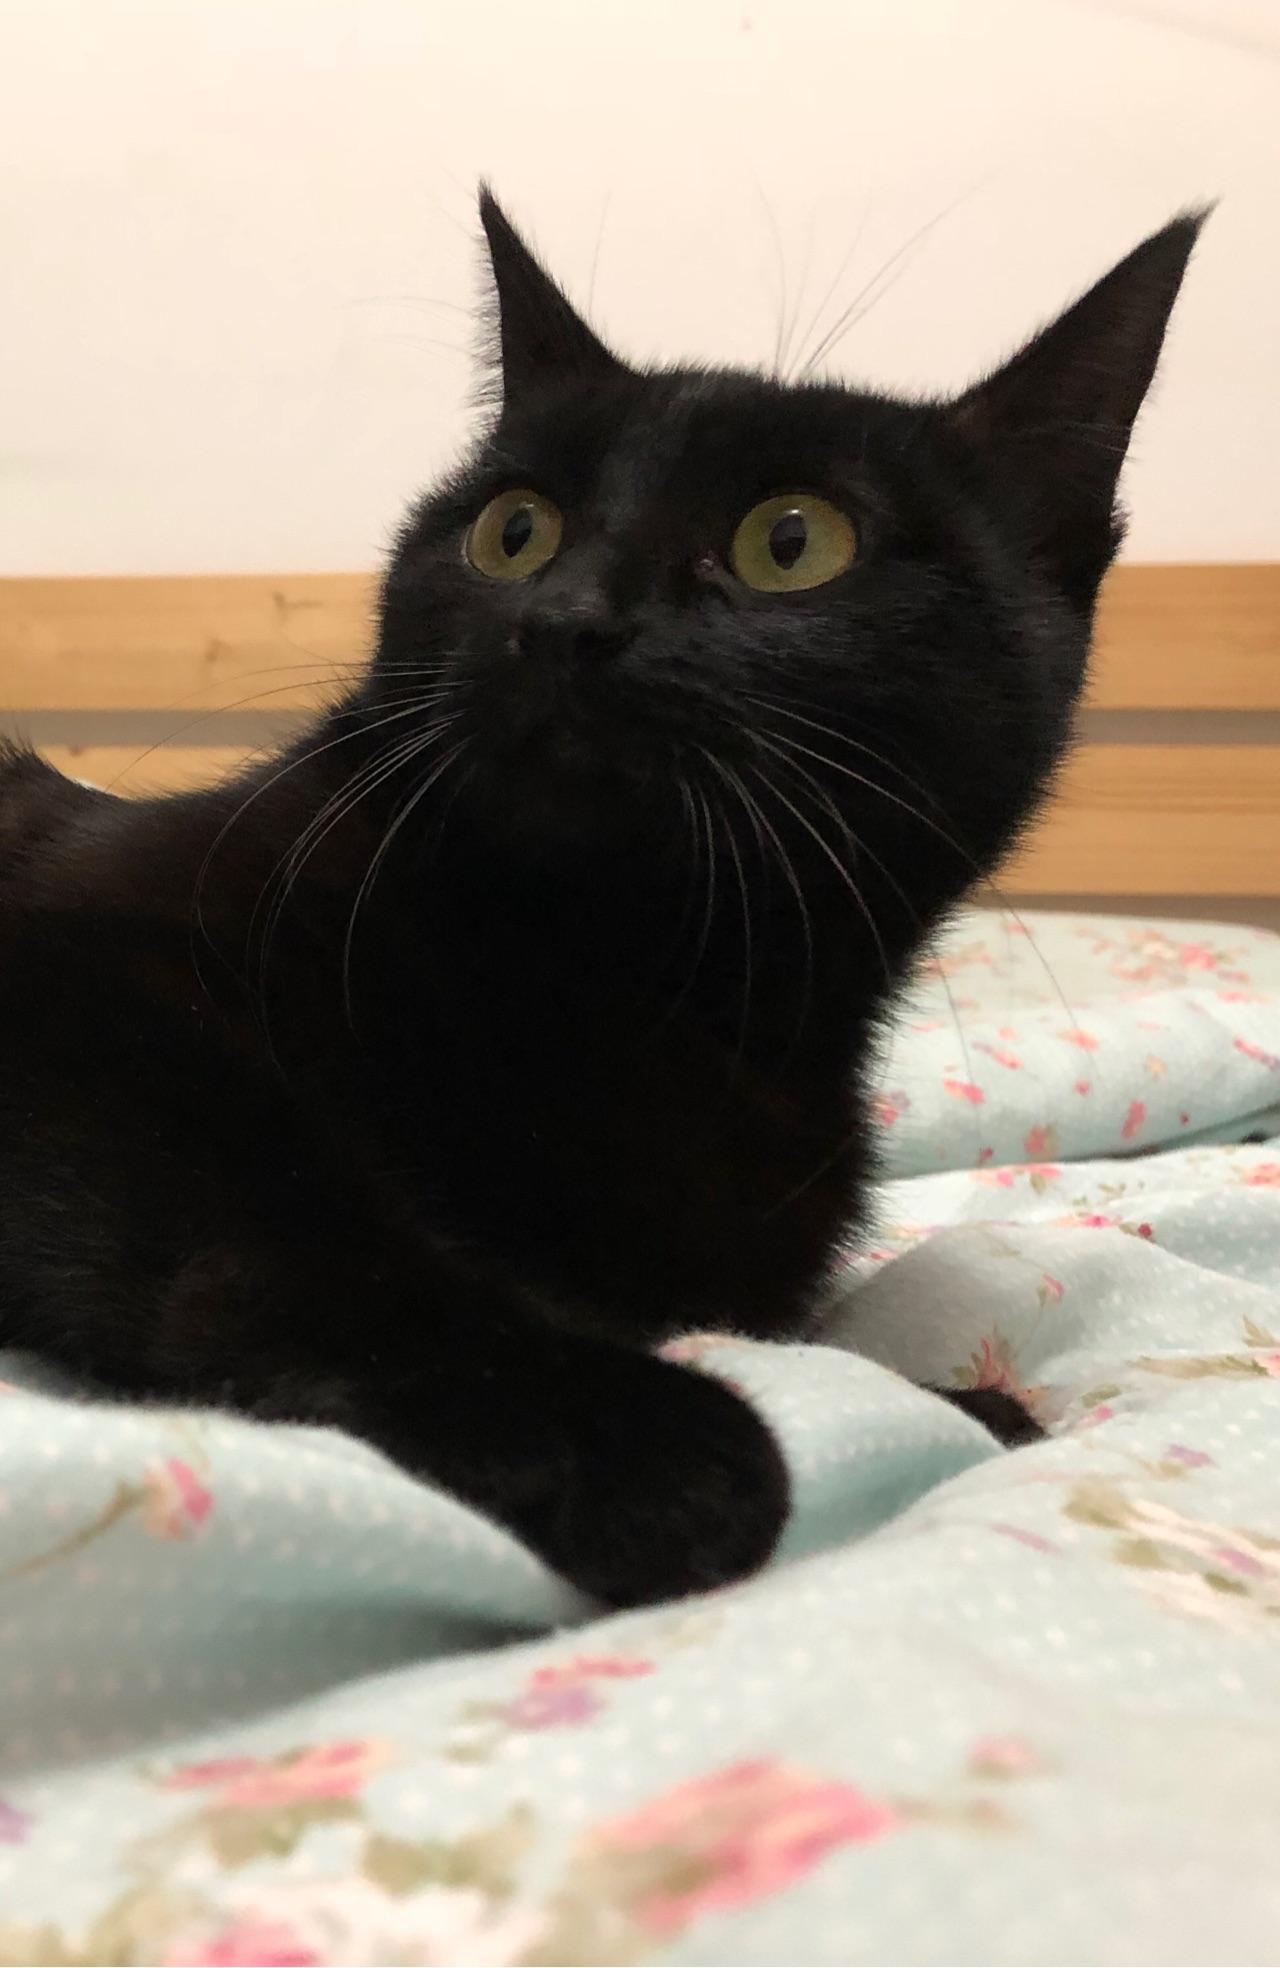 家里养了一只黑猫是一种什么样的体验?